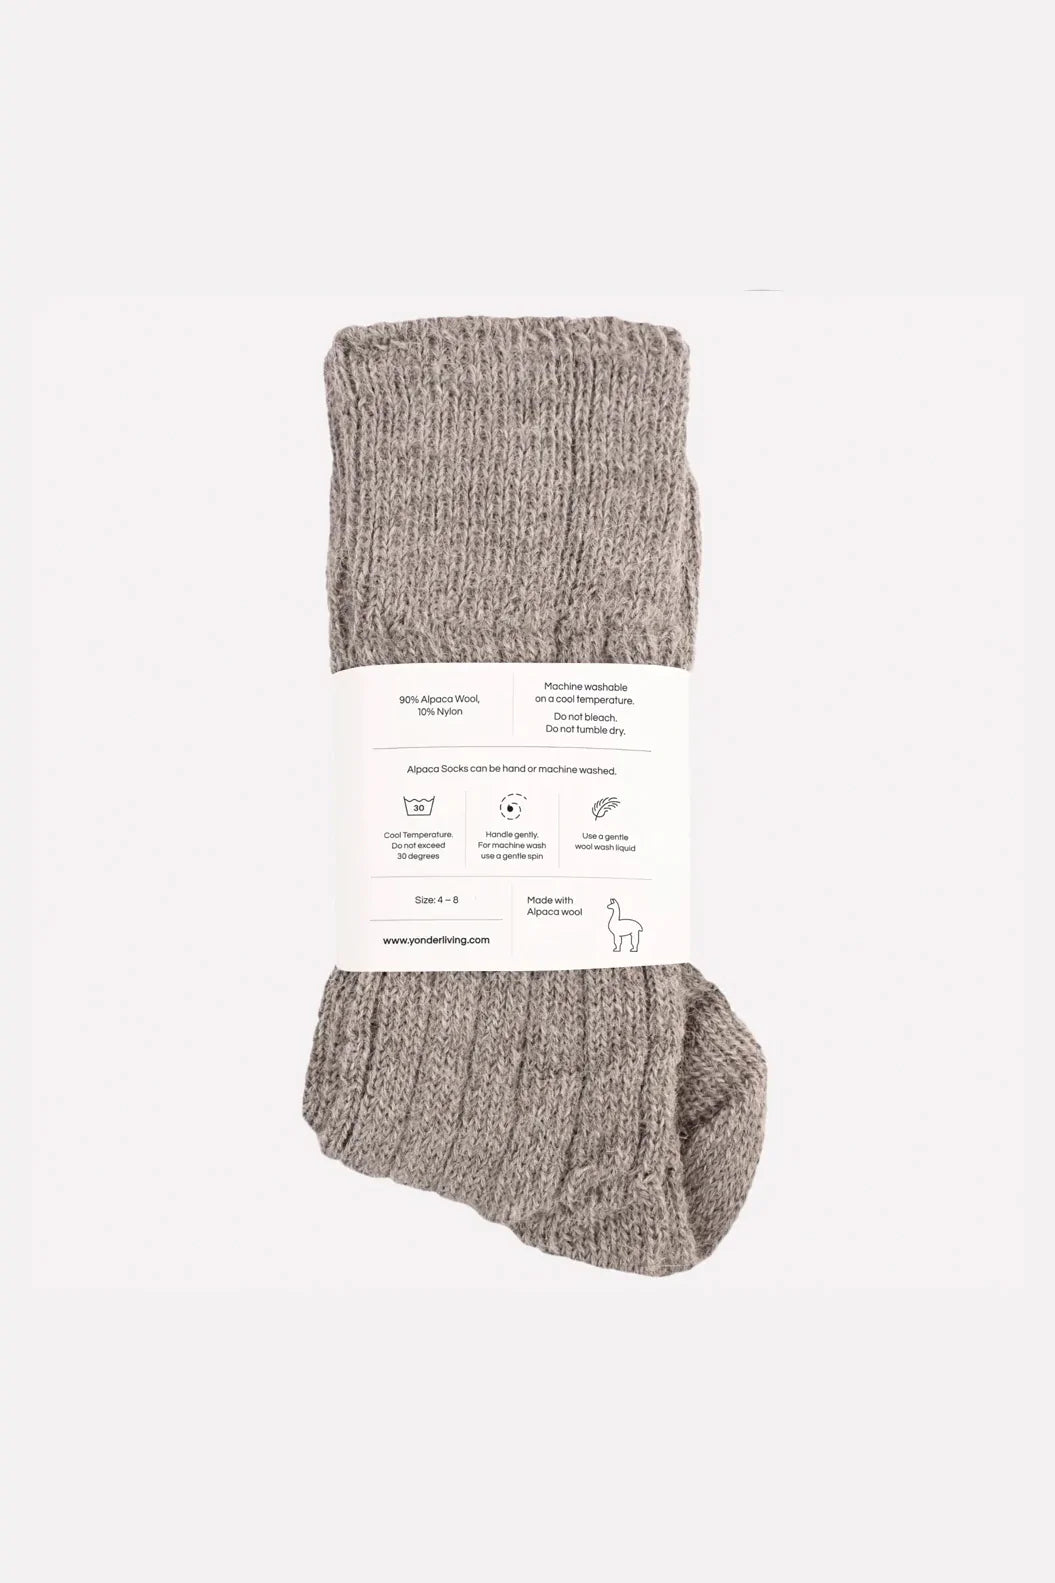 Grey Alpaca Bed Socks By Yonder